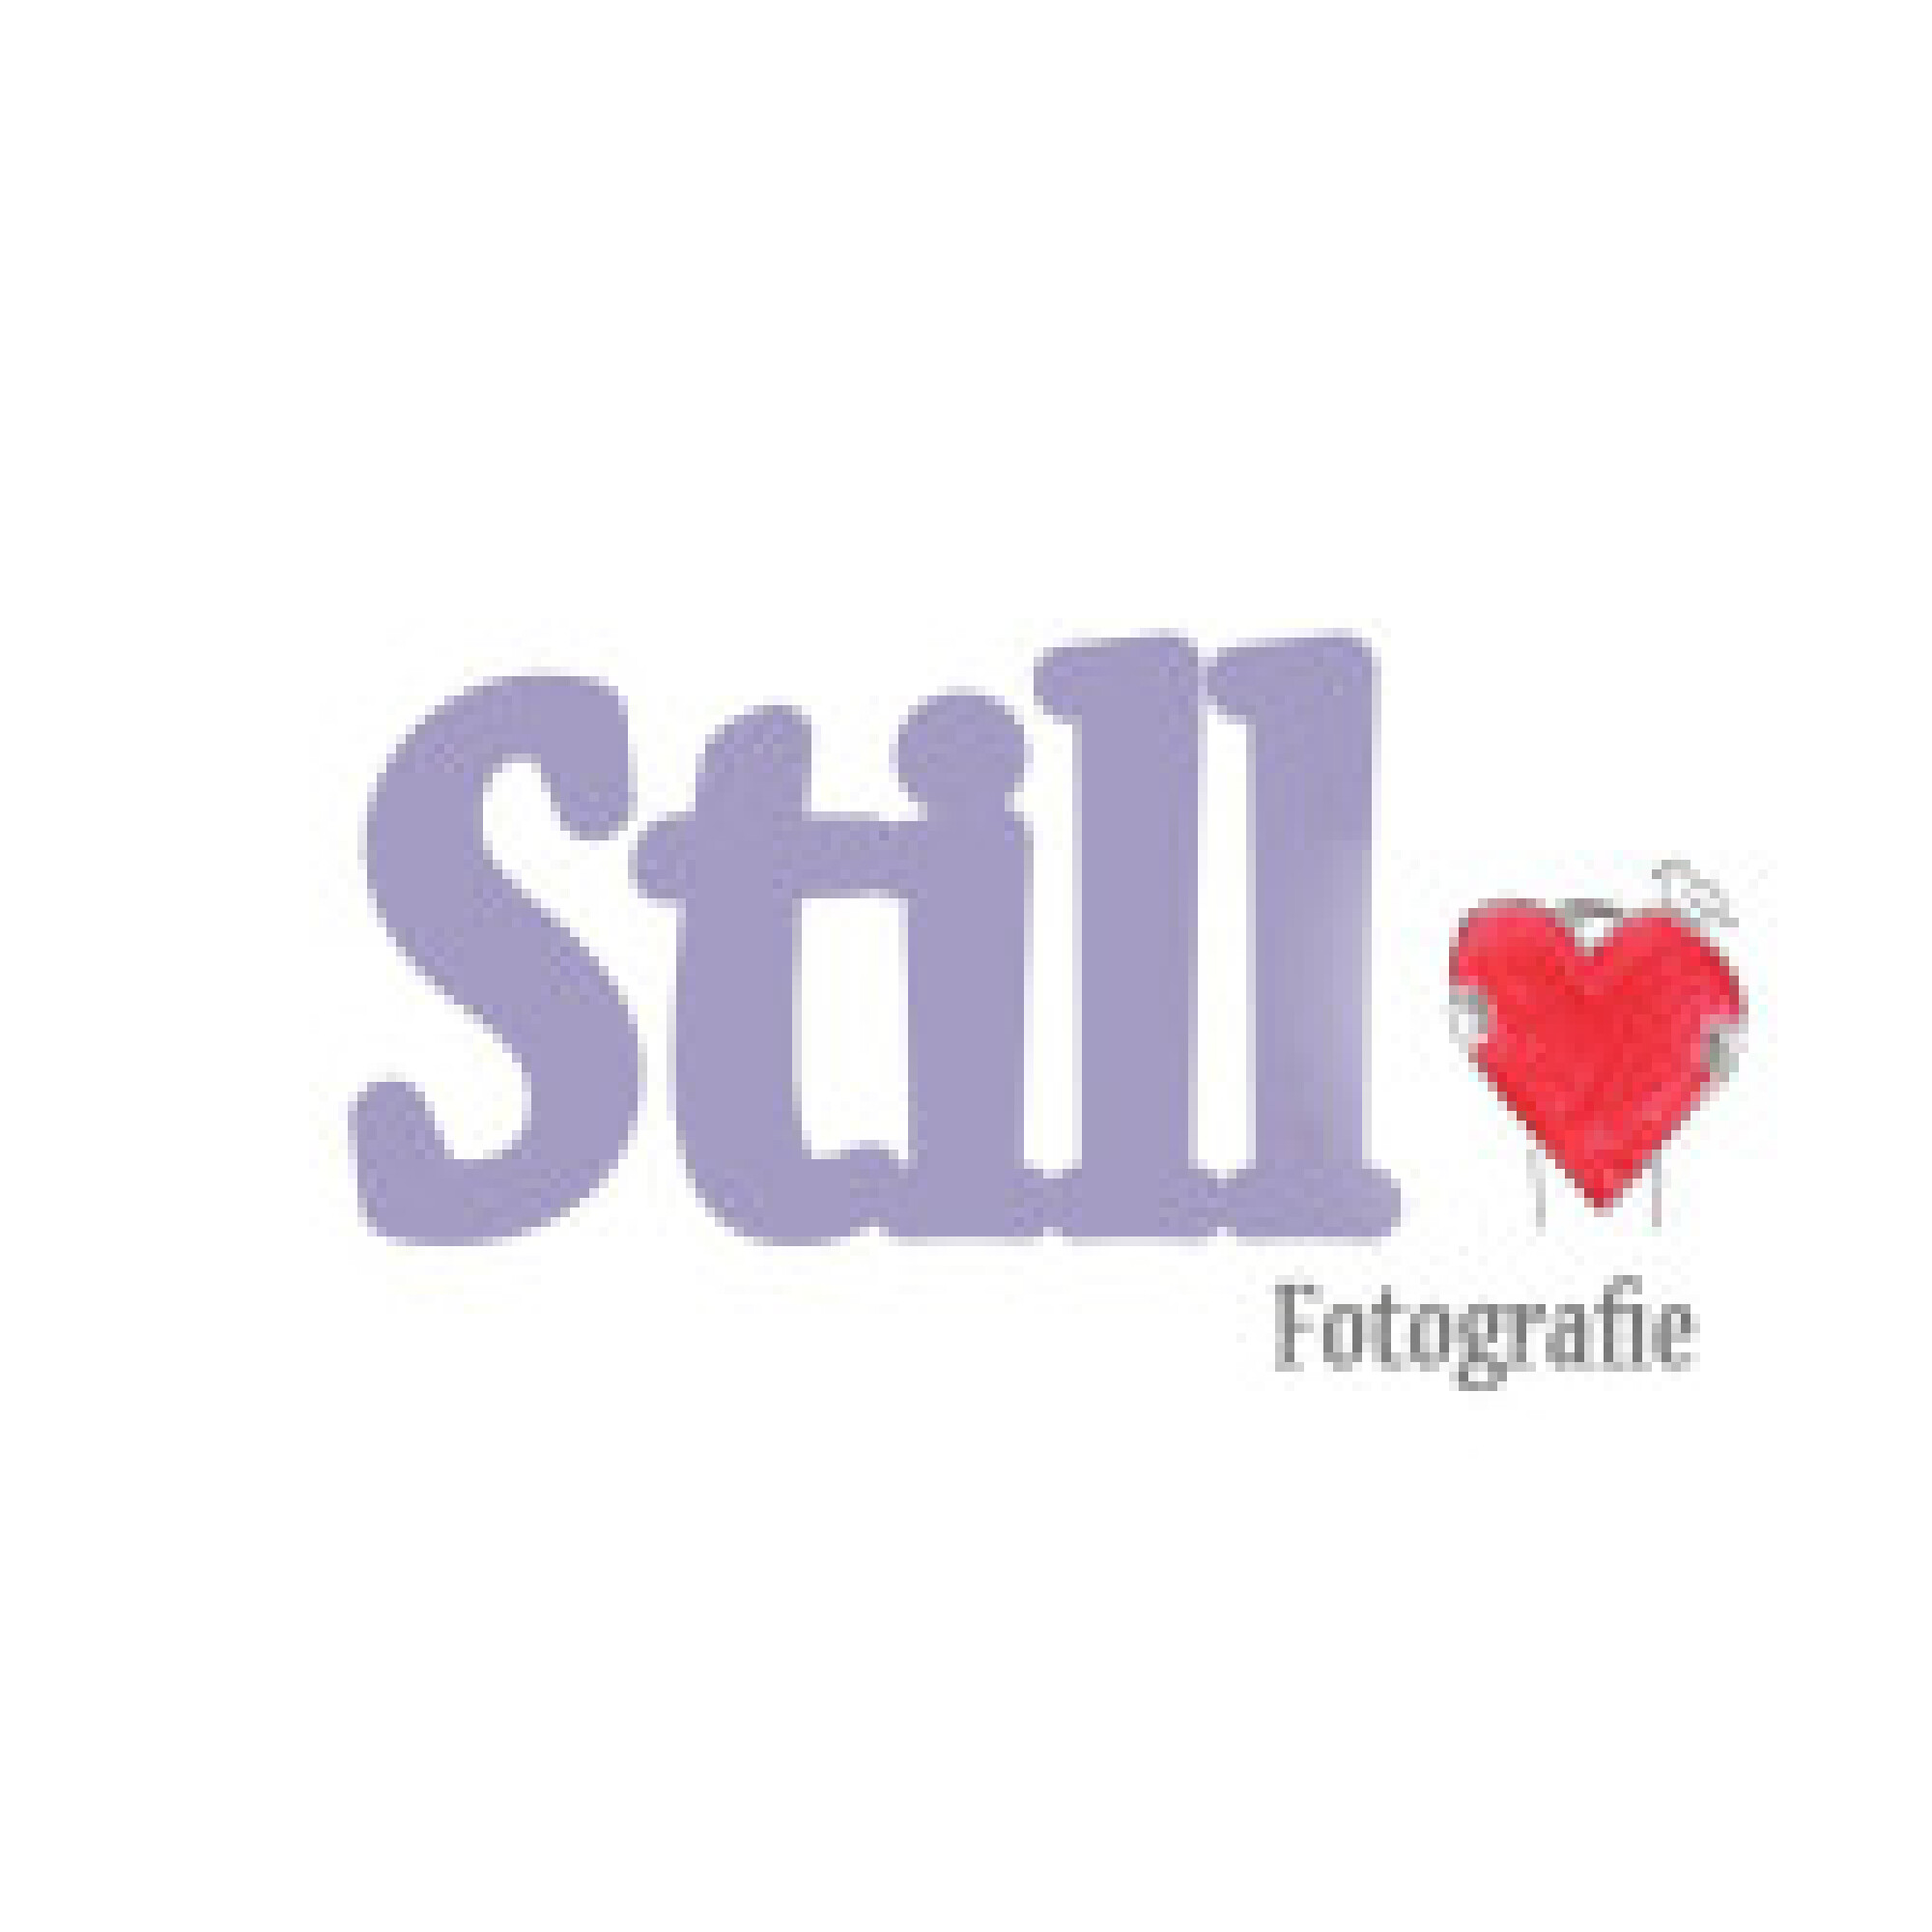 Stichting Still-Fotografie